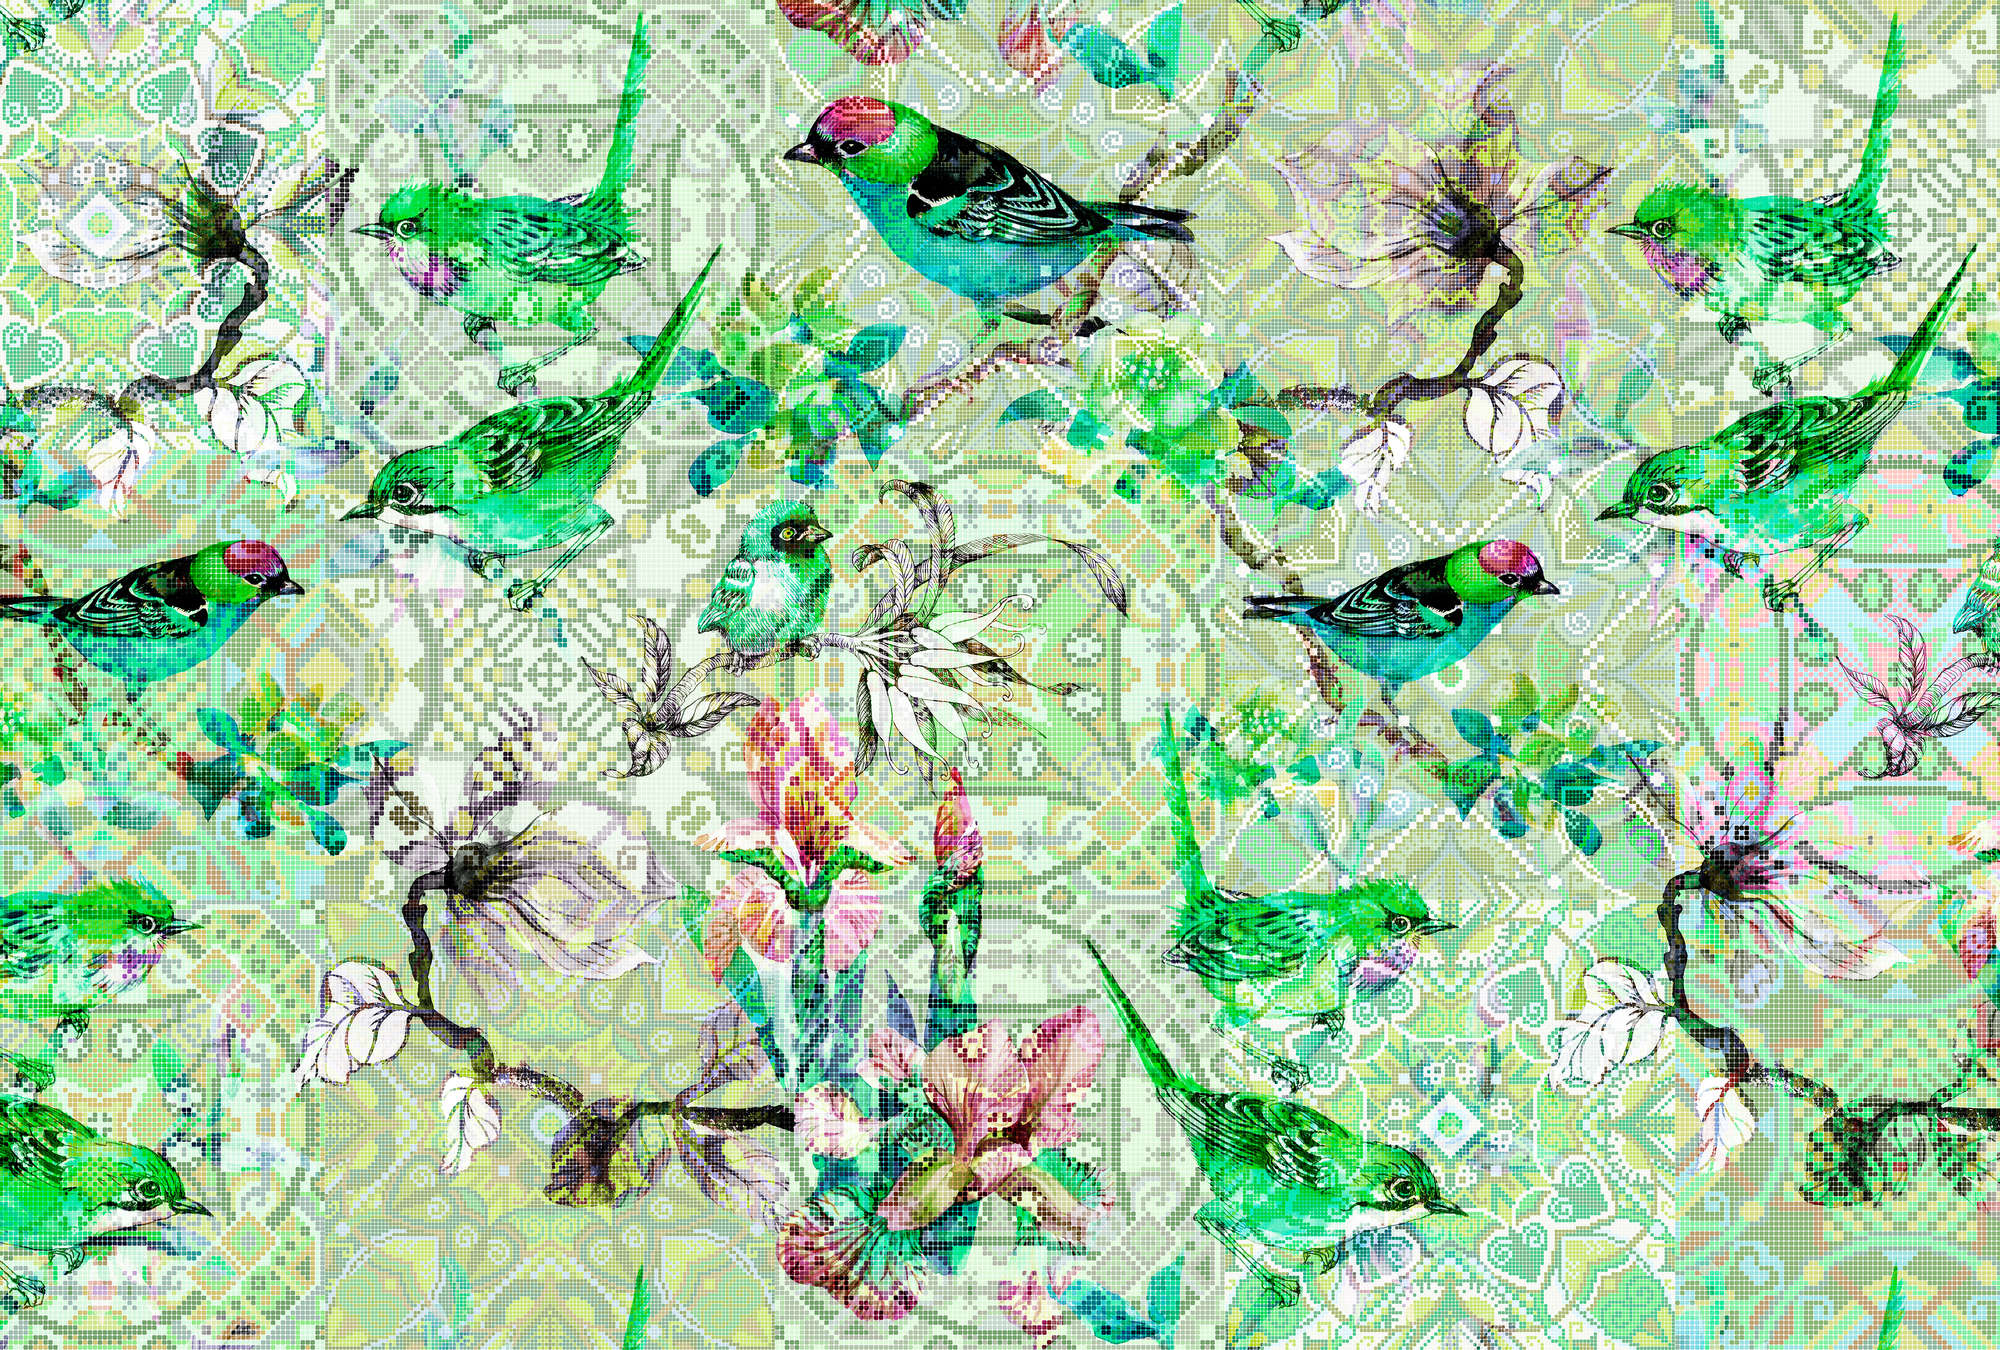             Vogelbehang Groen met Mozaïekpatroon - Groen, Roze
        